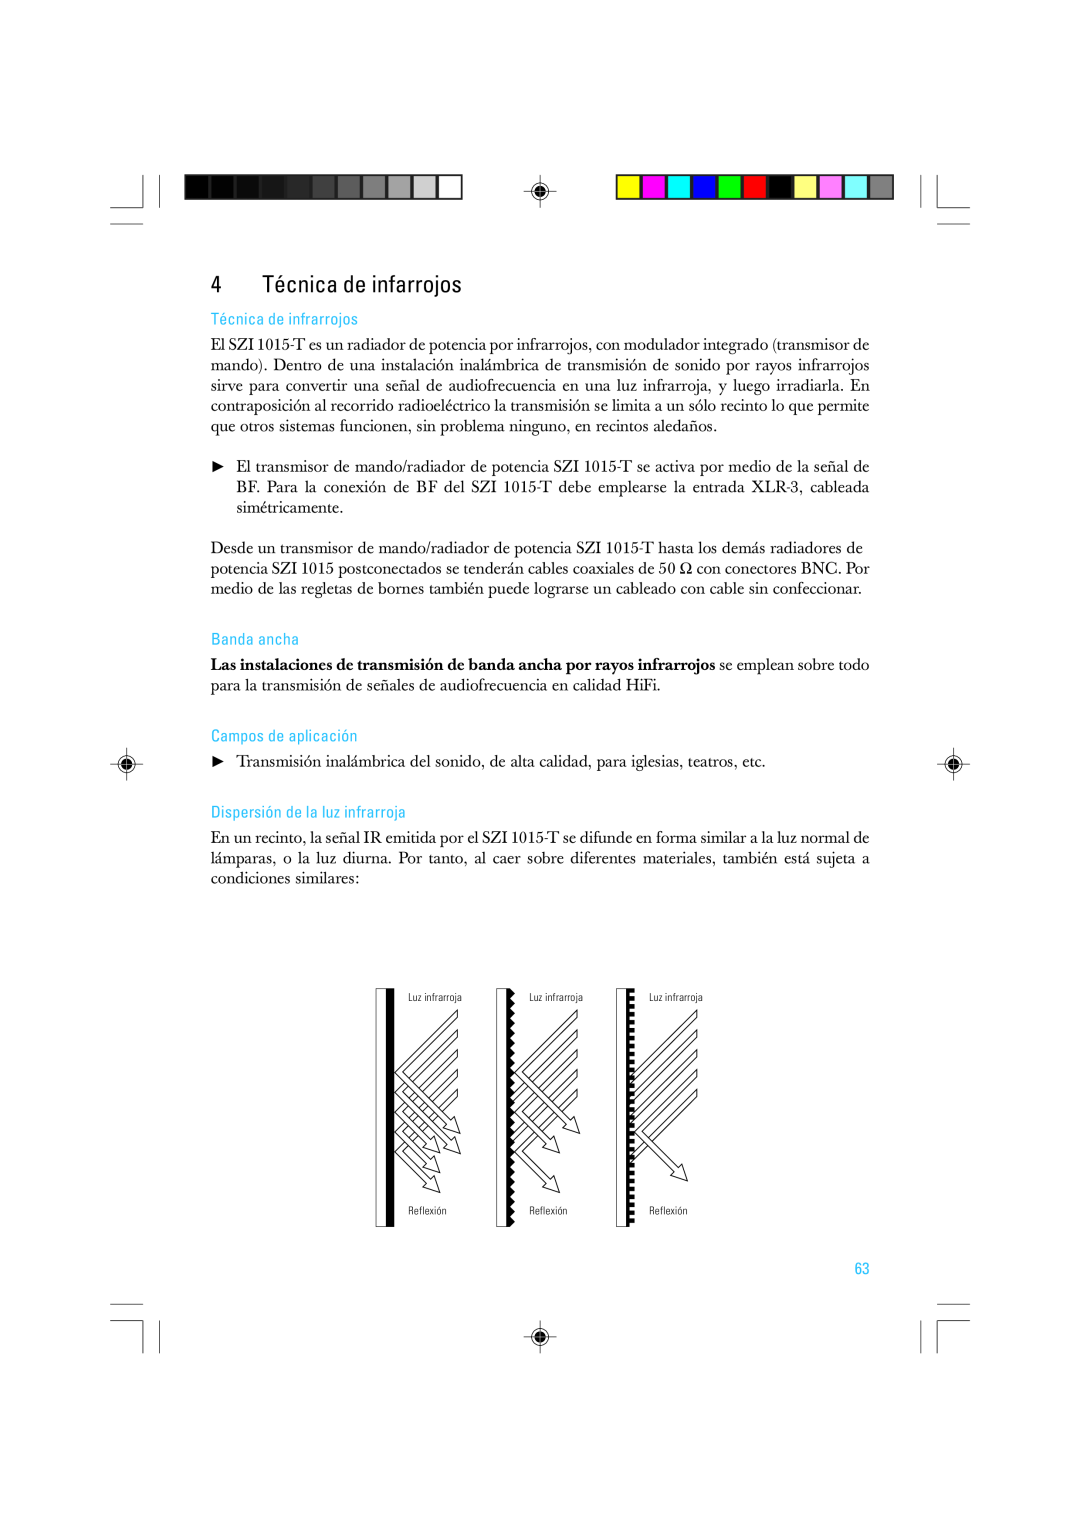 Sennheiser SZI 1015-T manual 4 Técnica de infarrojos, Técnica de infrarrojos, Banda ancha, Campos de aplicación 